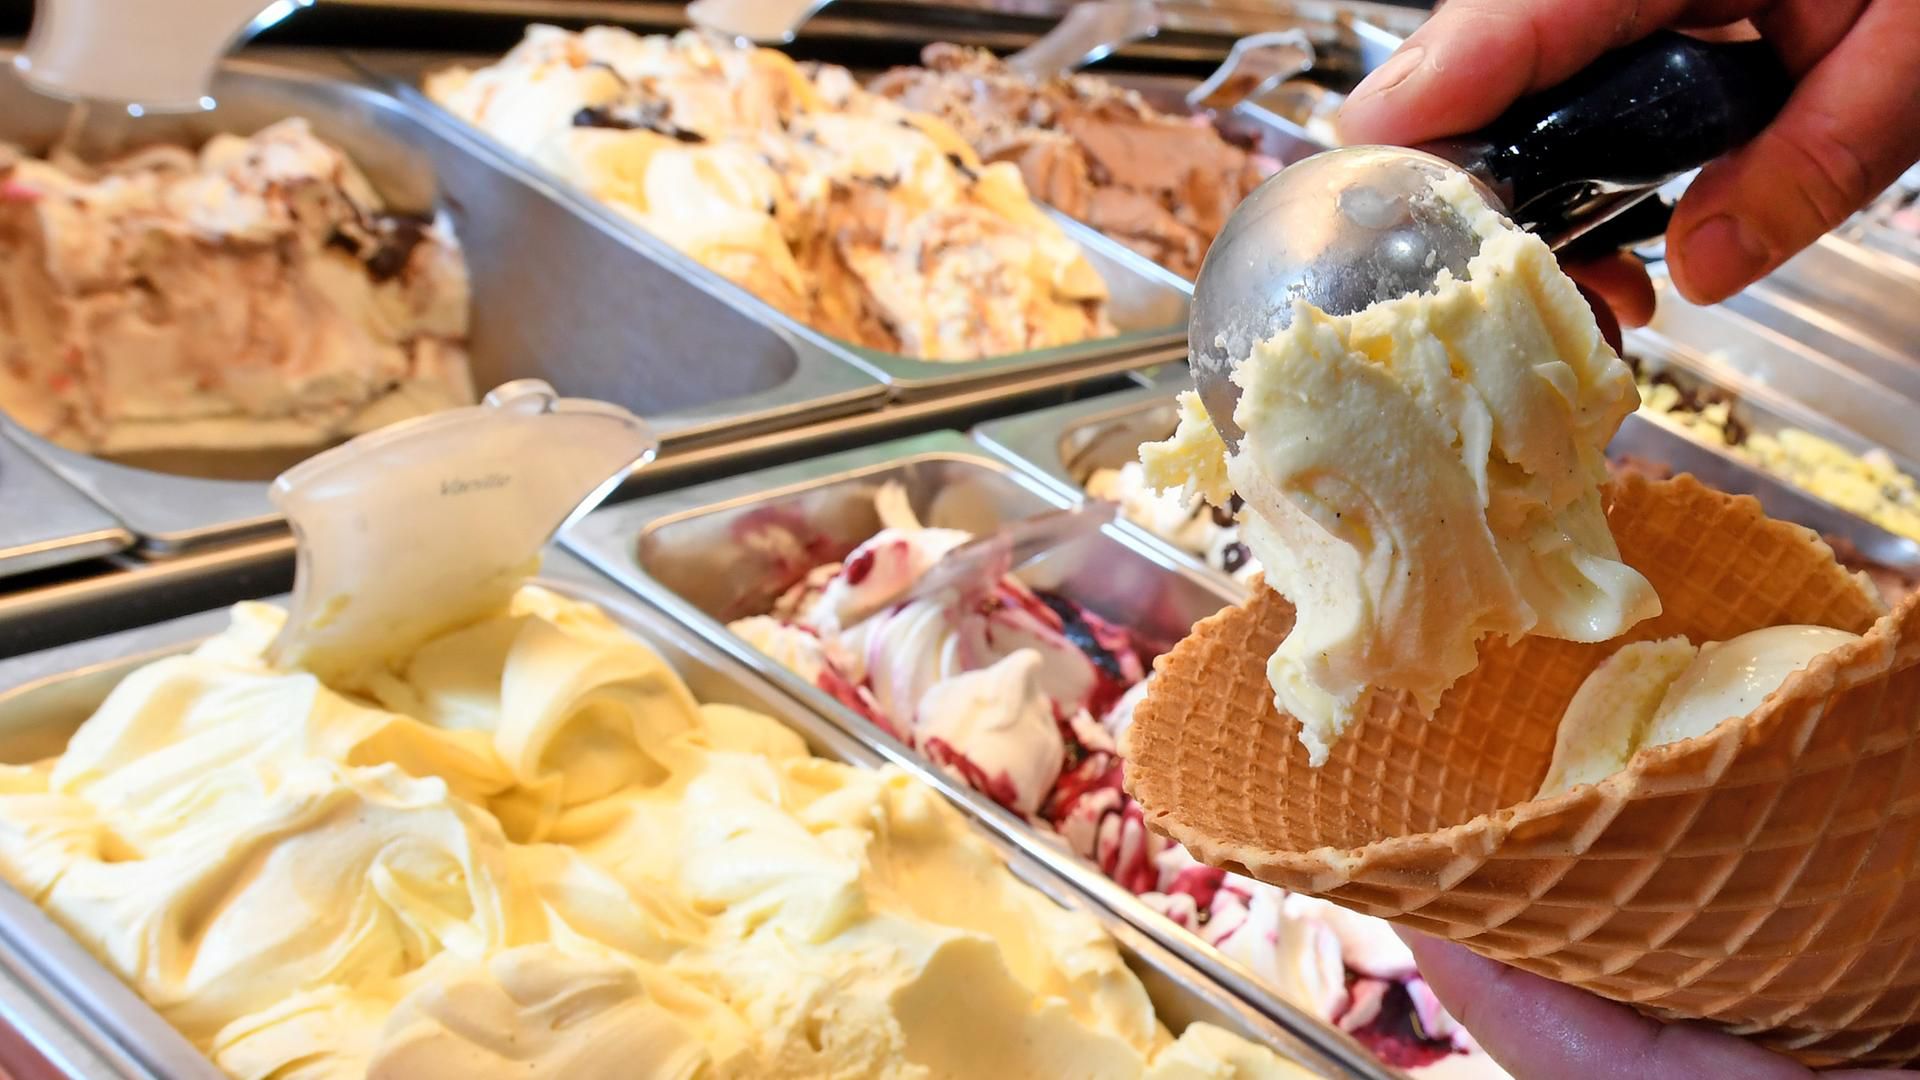 Kugel Eis kostet bis zu 2 Euro: Wird Eis essen zum Luxus? | hessenschau.de